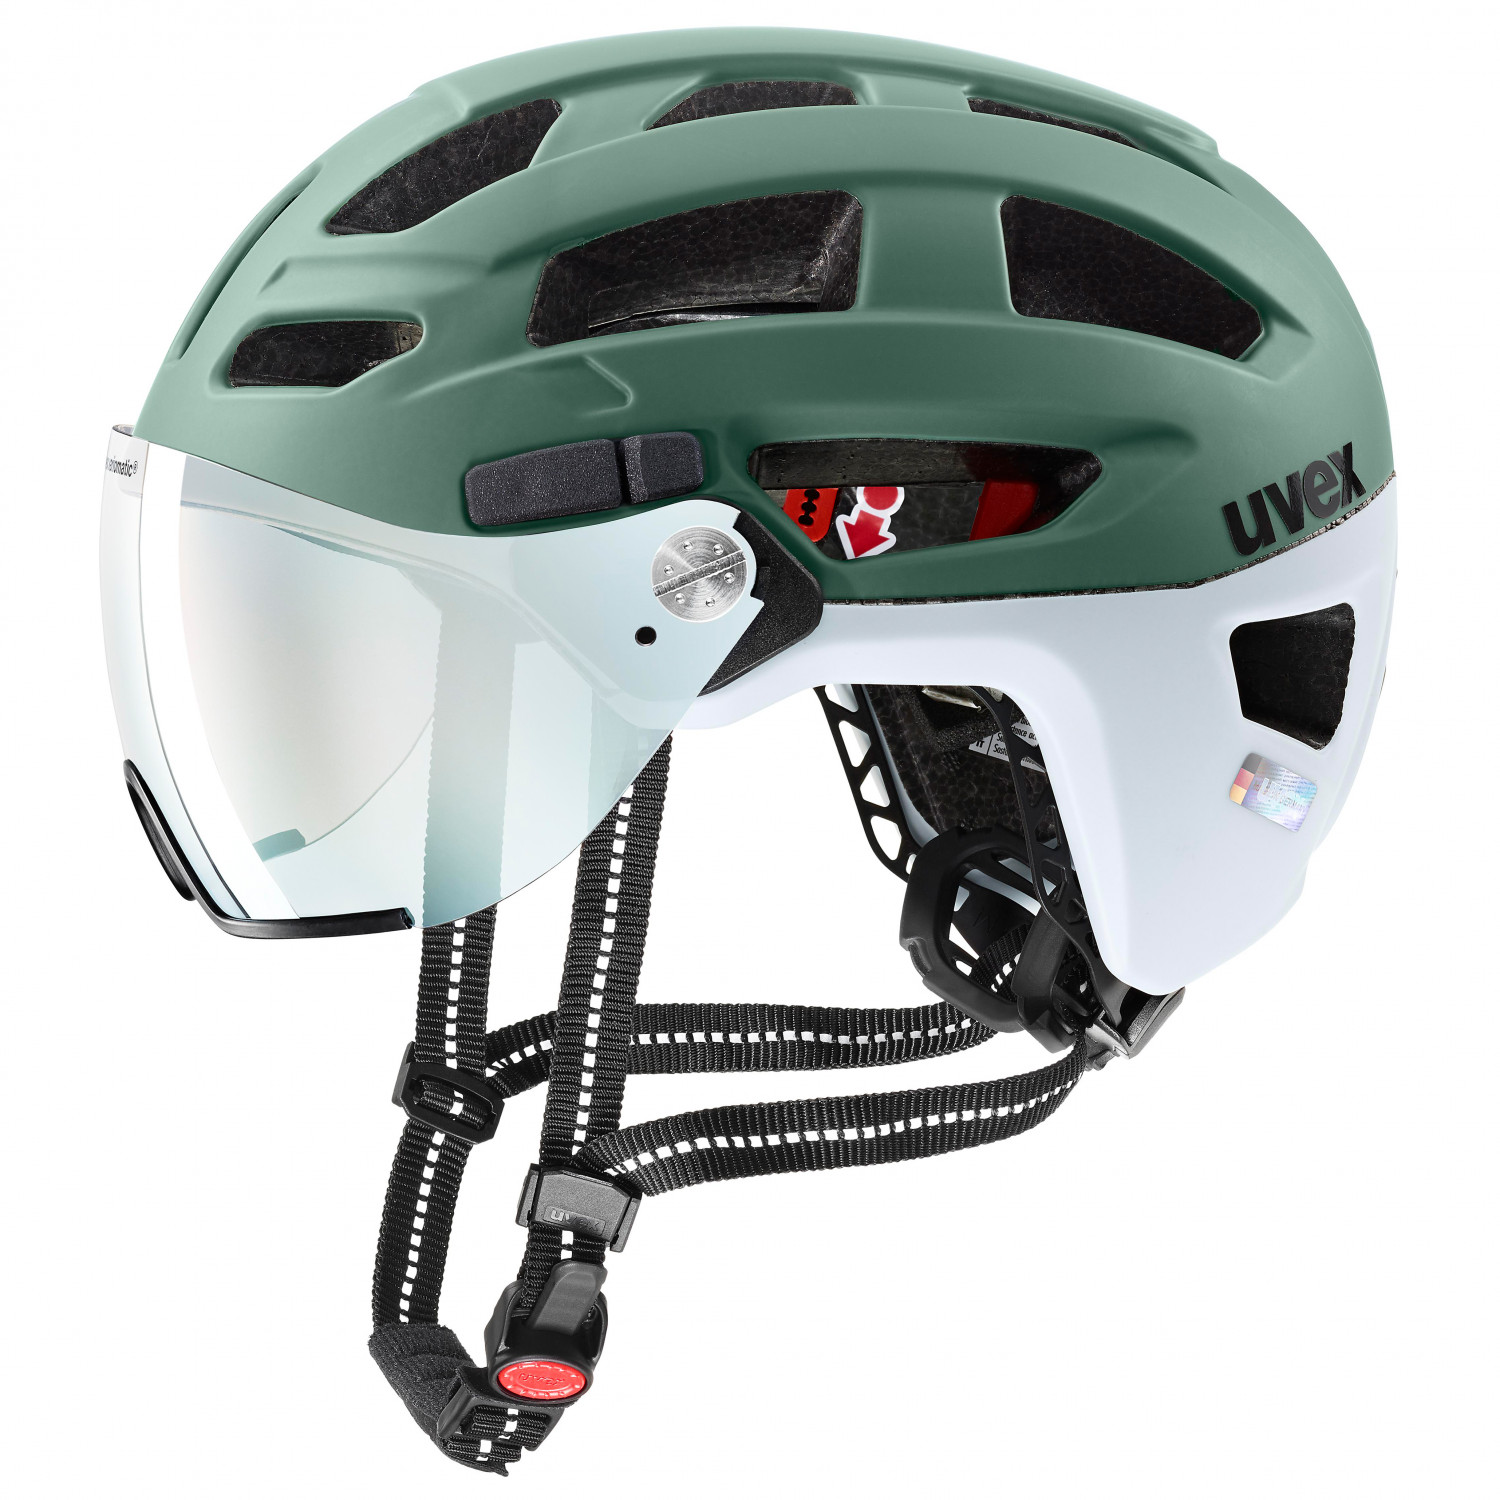 Велосипедный шлем Uvex Finale Visor Vario, цвет Moss Green/Cloud Matt шлем uvex 700 visor серый размер 52 55